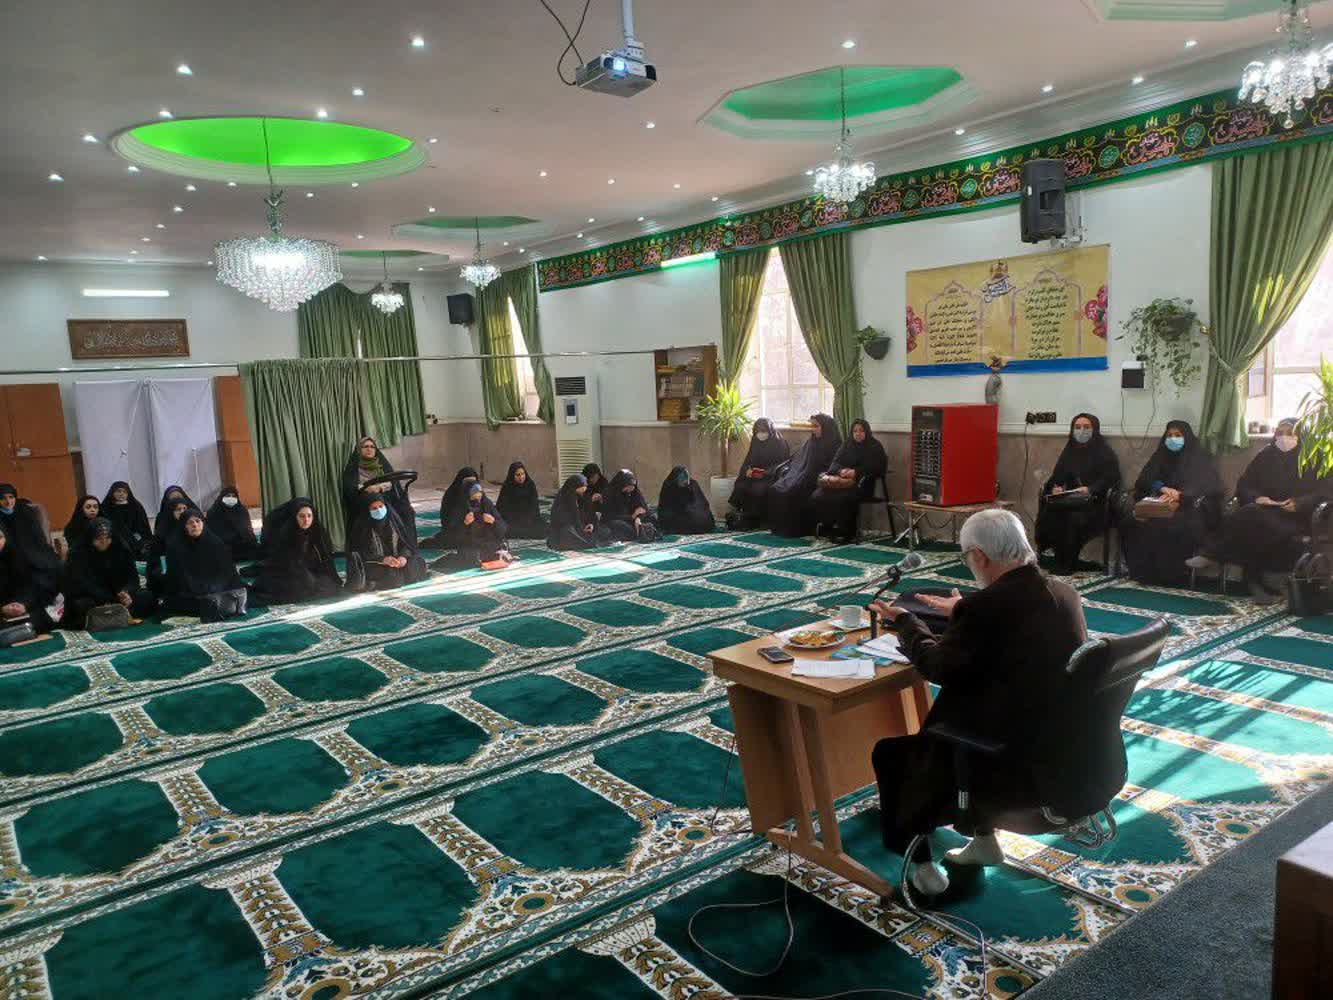 با حضور استاد مرکز تخصصی نماز مشهد در تبادکان، نشست و گفتمان دینی با موضوع نماز برگزار شد